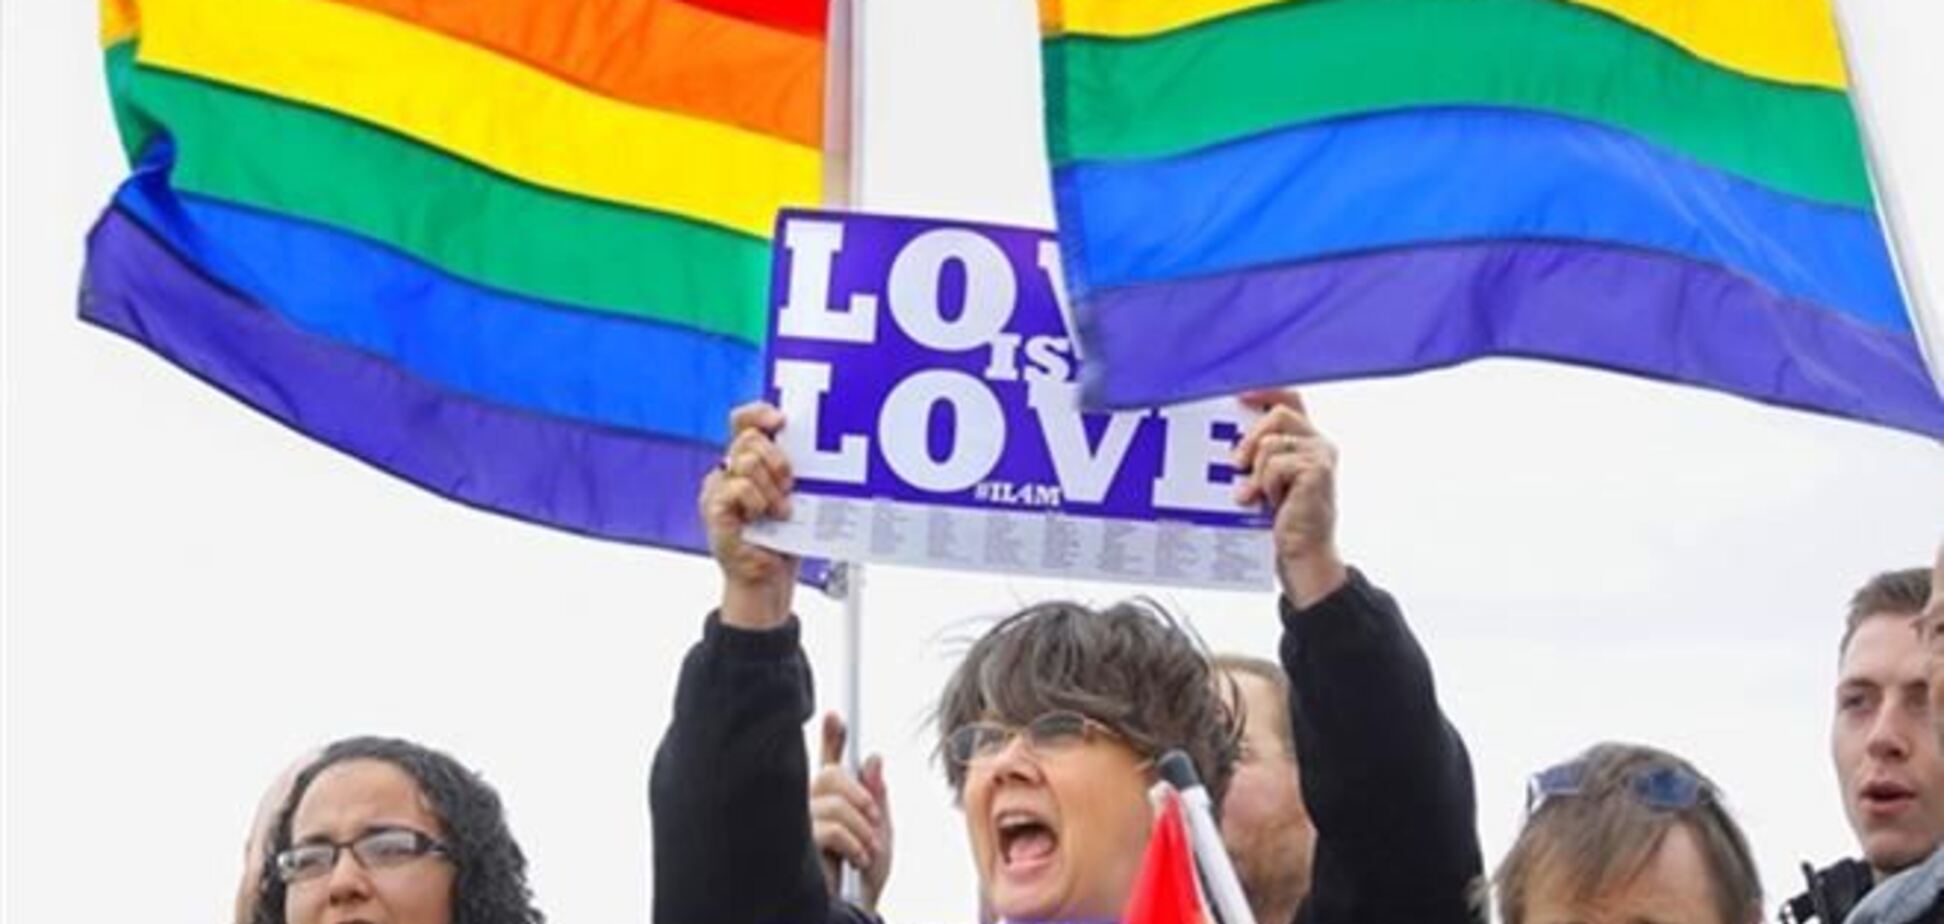 На Гаваях легалізували одностатеві шлюби